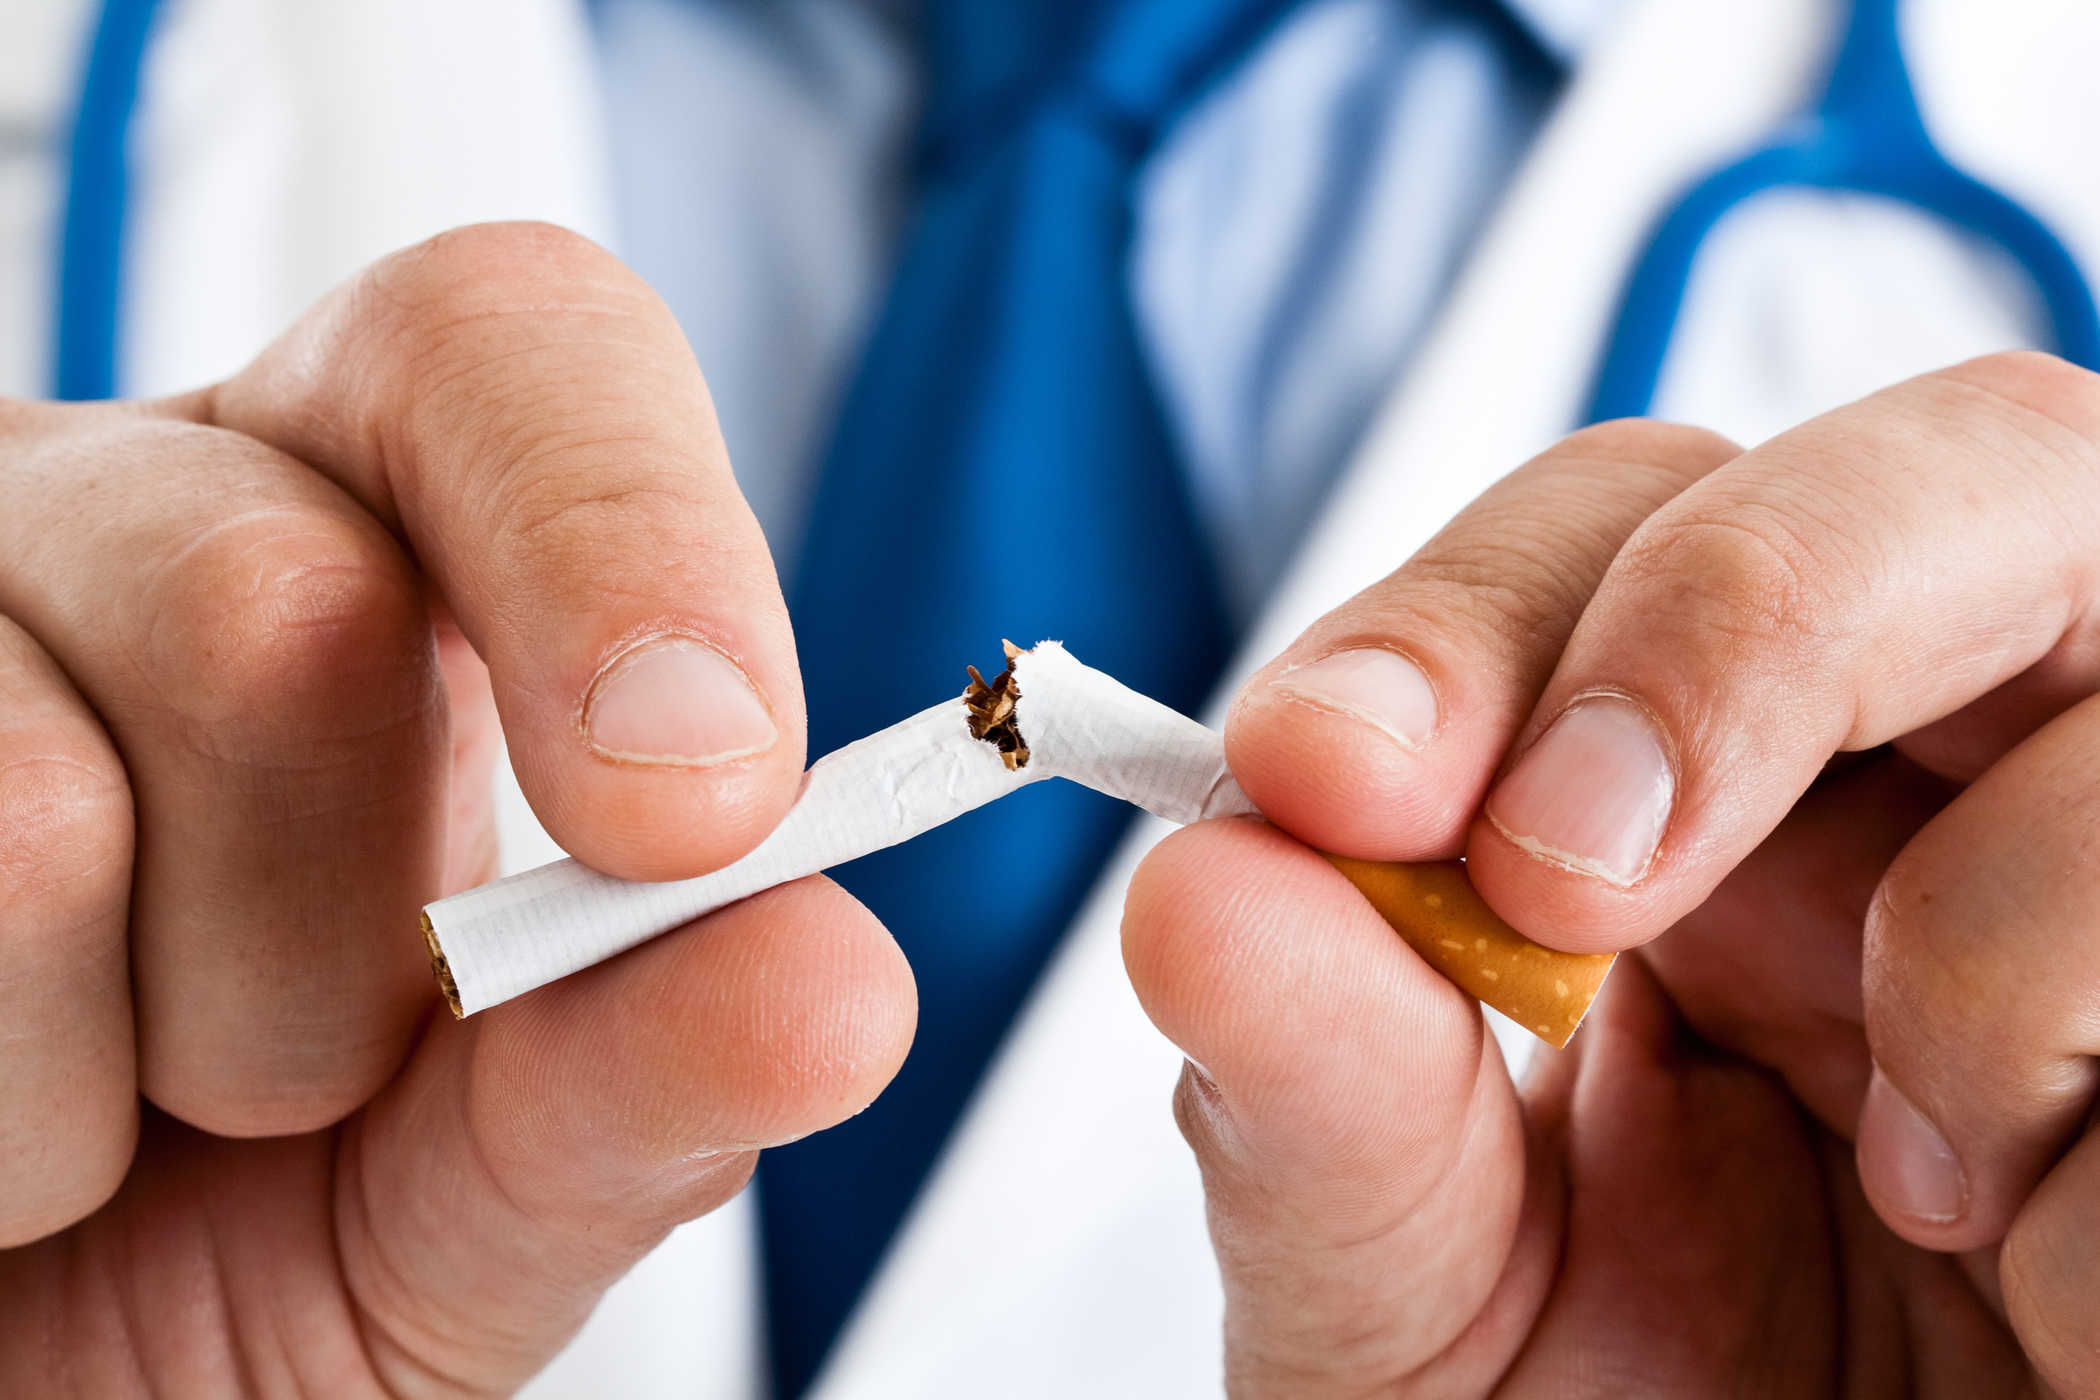 니코틴 중독: 왜 발생하고 어떻게 극복합니까?